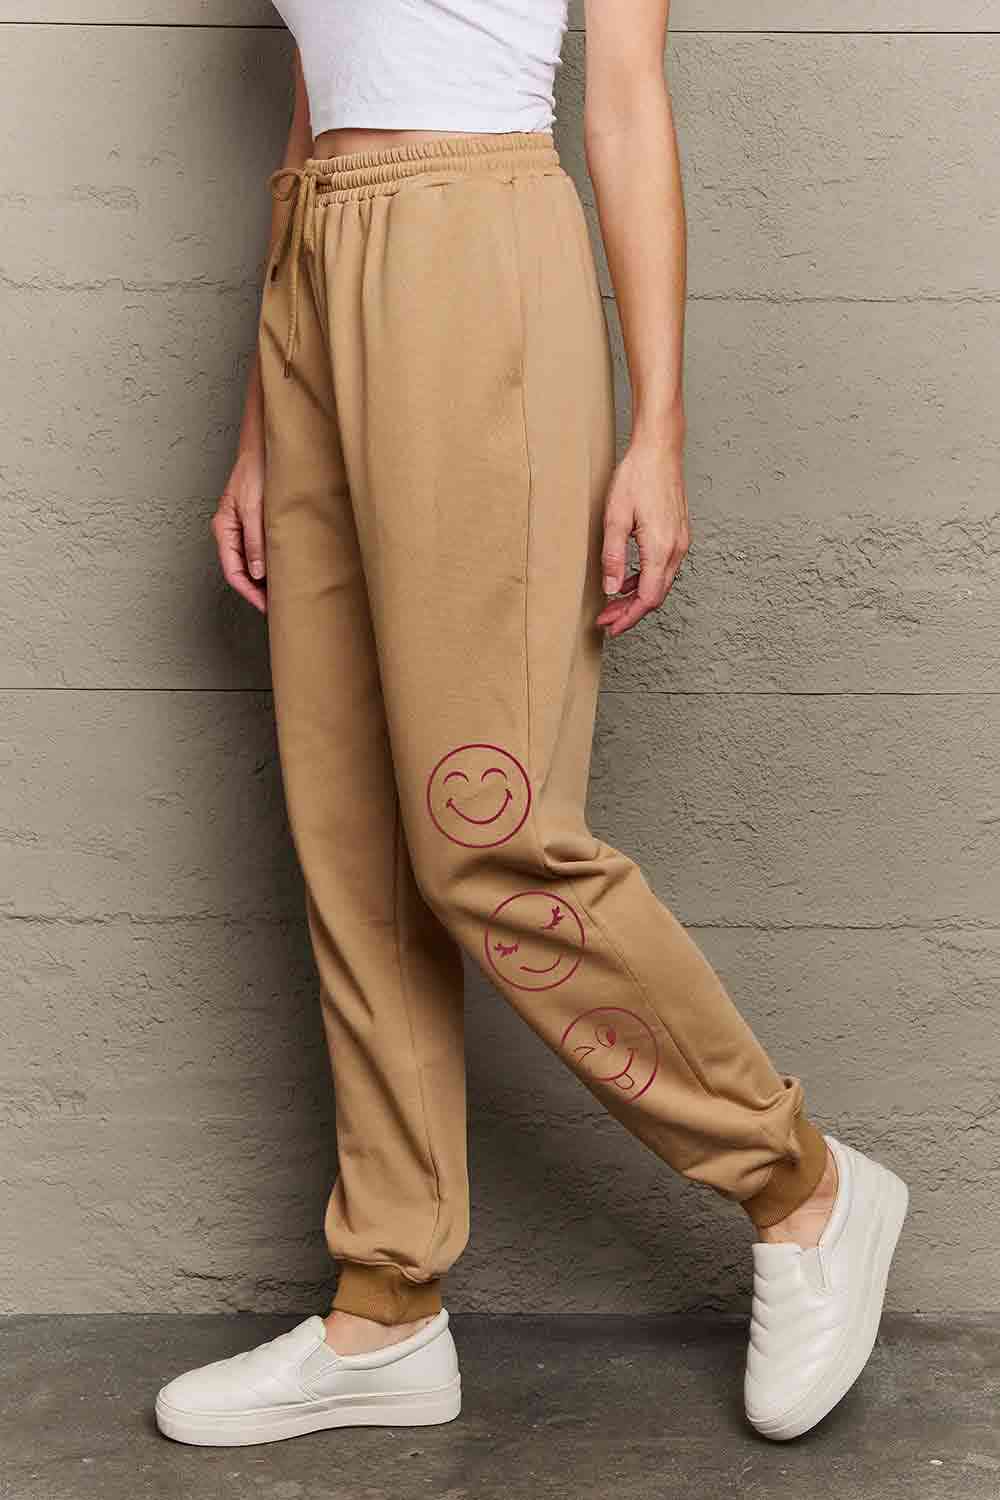 Simply Love - Pantalon de survêtement à motif Emoji pleine taille